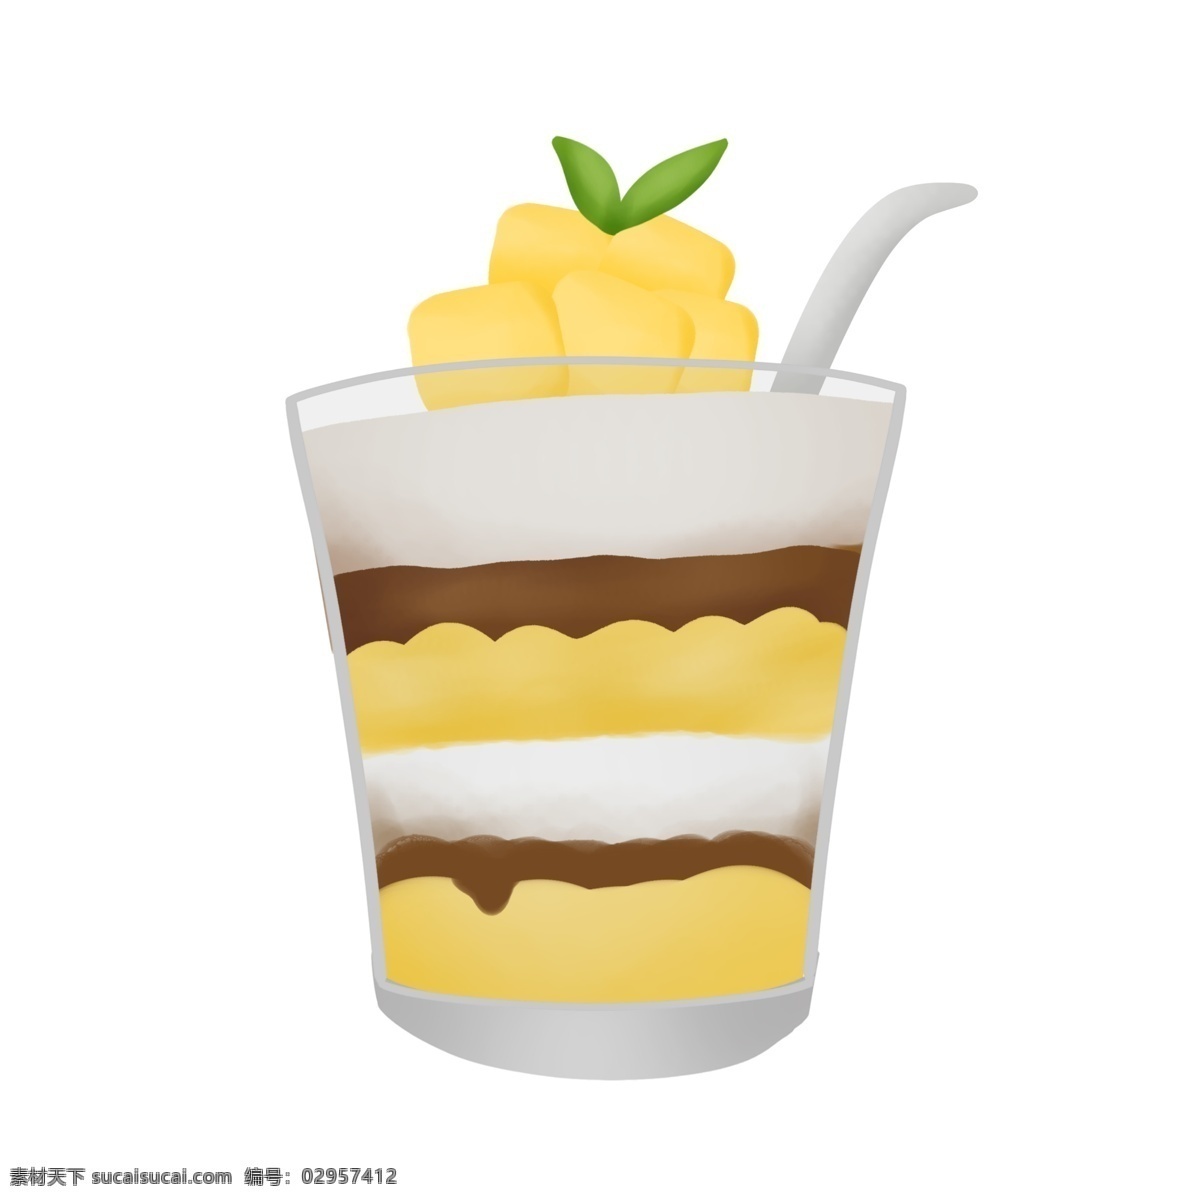 夏天 芒果 味 甜品 奶油 蛋糕 冰淇淋 清凉